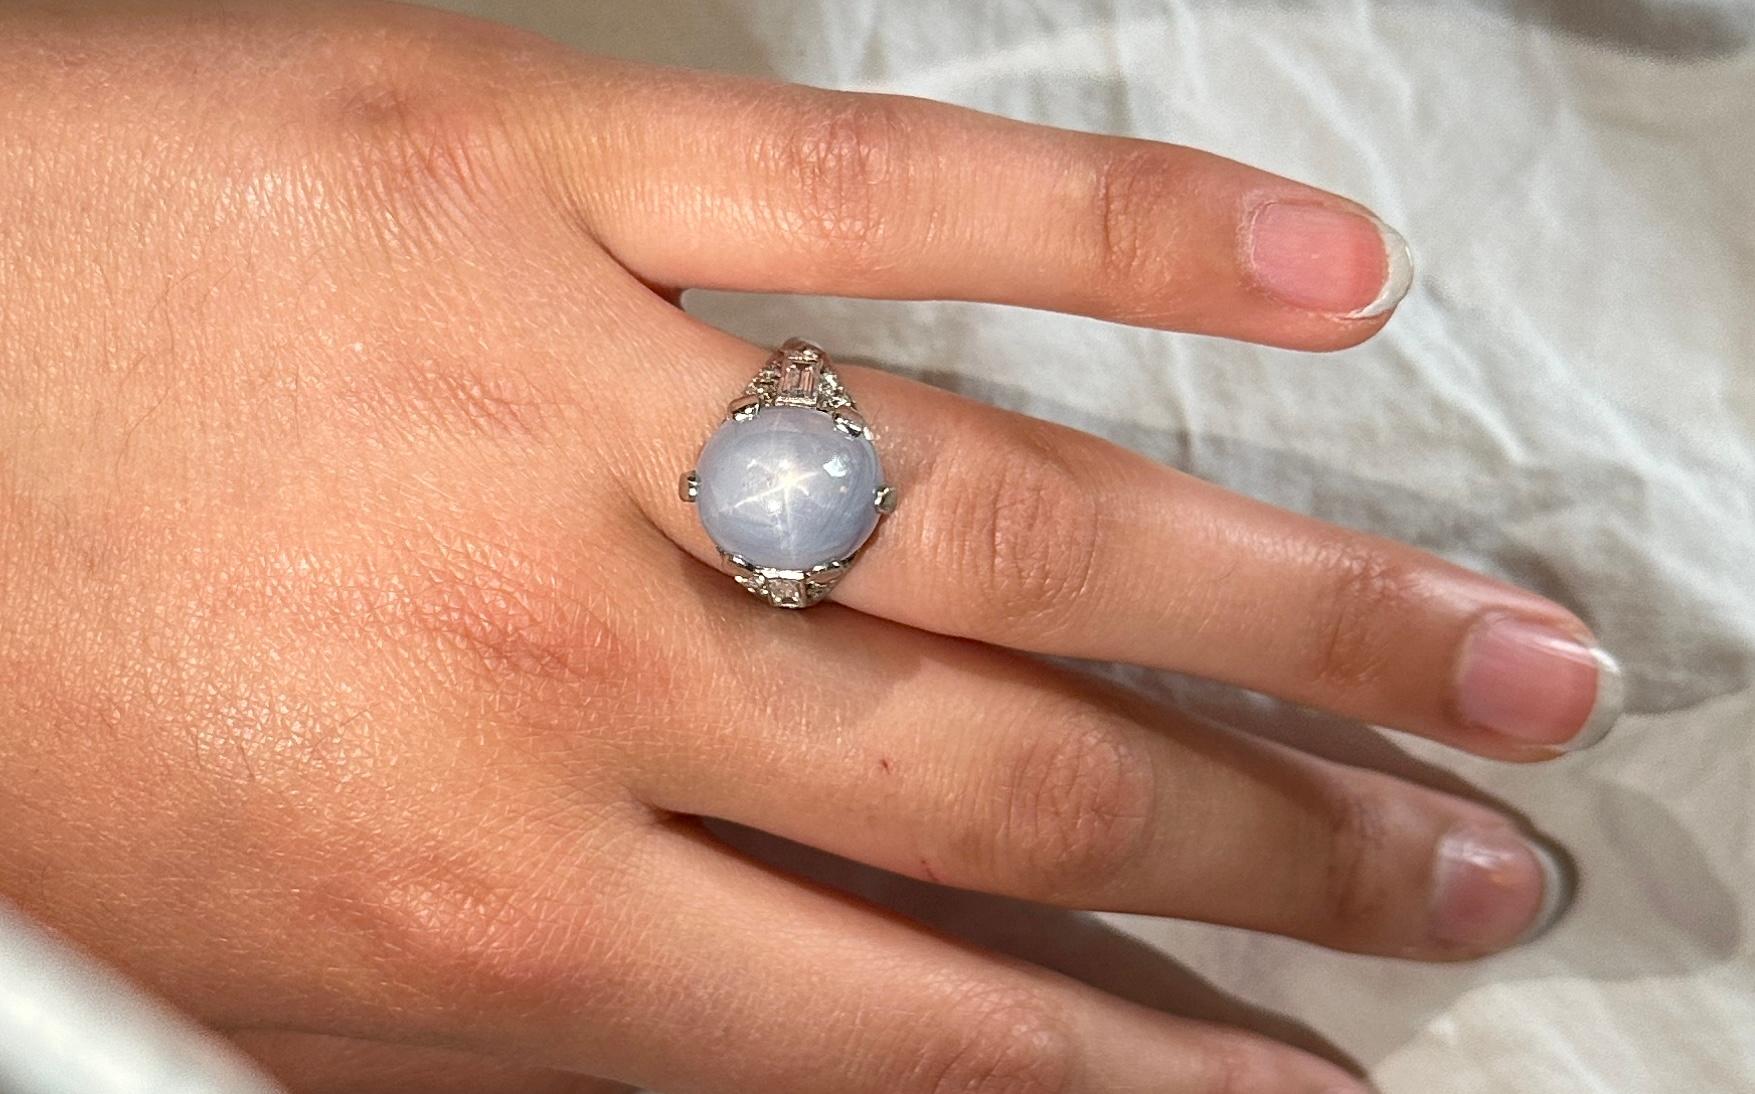 Dies ist ein spektakulärer Art-Deco-Ring mit einem 20,62 Karat schweren blauen Sternsaphir von außergewöhnlicher Schönheit.  Der Cocktailring ist außerdem mit zwei Diamanten im Baguetteschliff und 10 runden Diamanten im Brillantschliff verziert. 